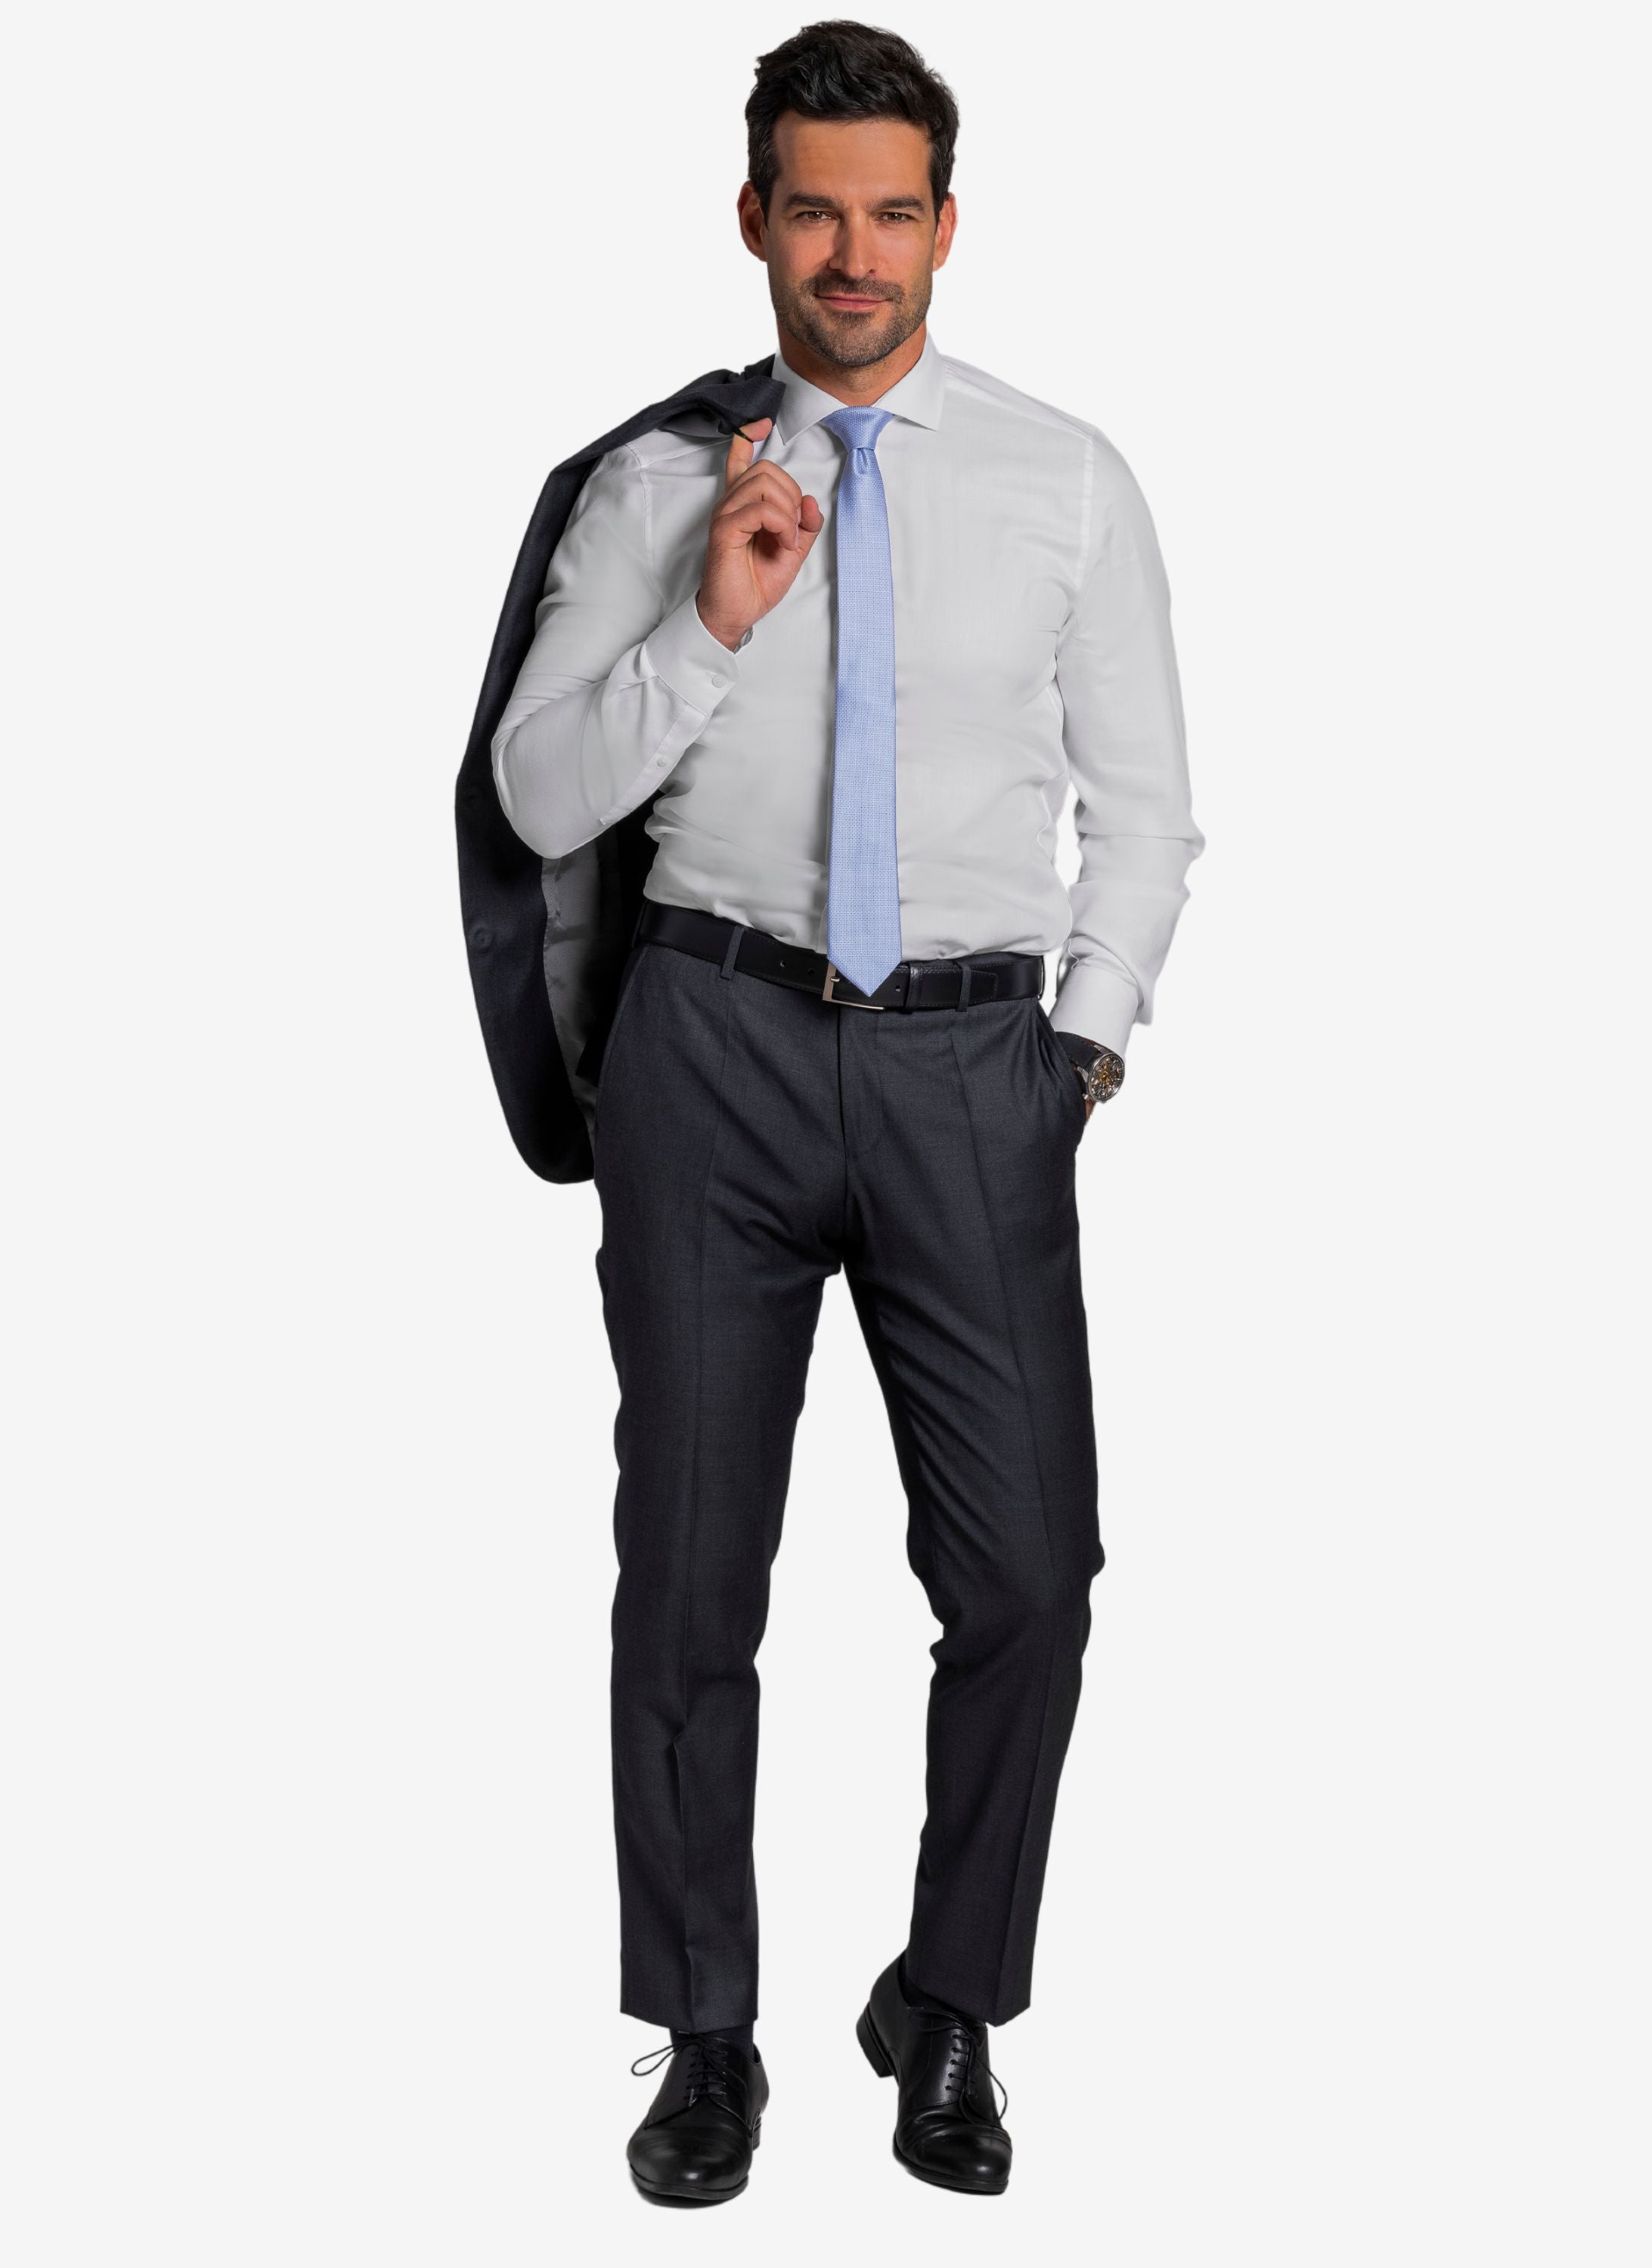 Weisses Hemd mit hellblauer Krawatte und Hose in anthrazit.